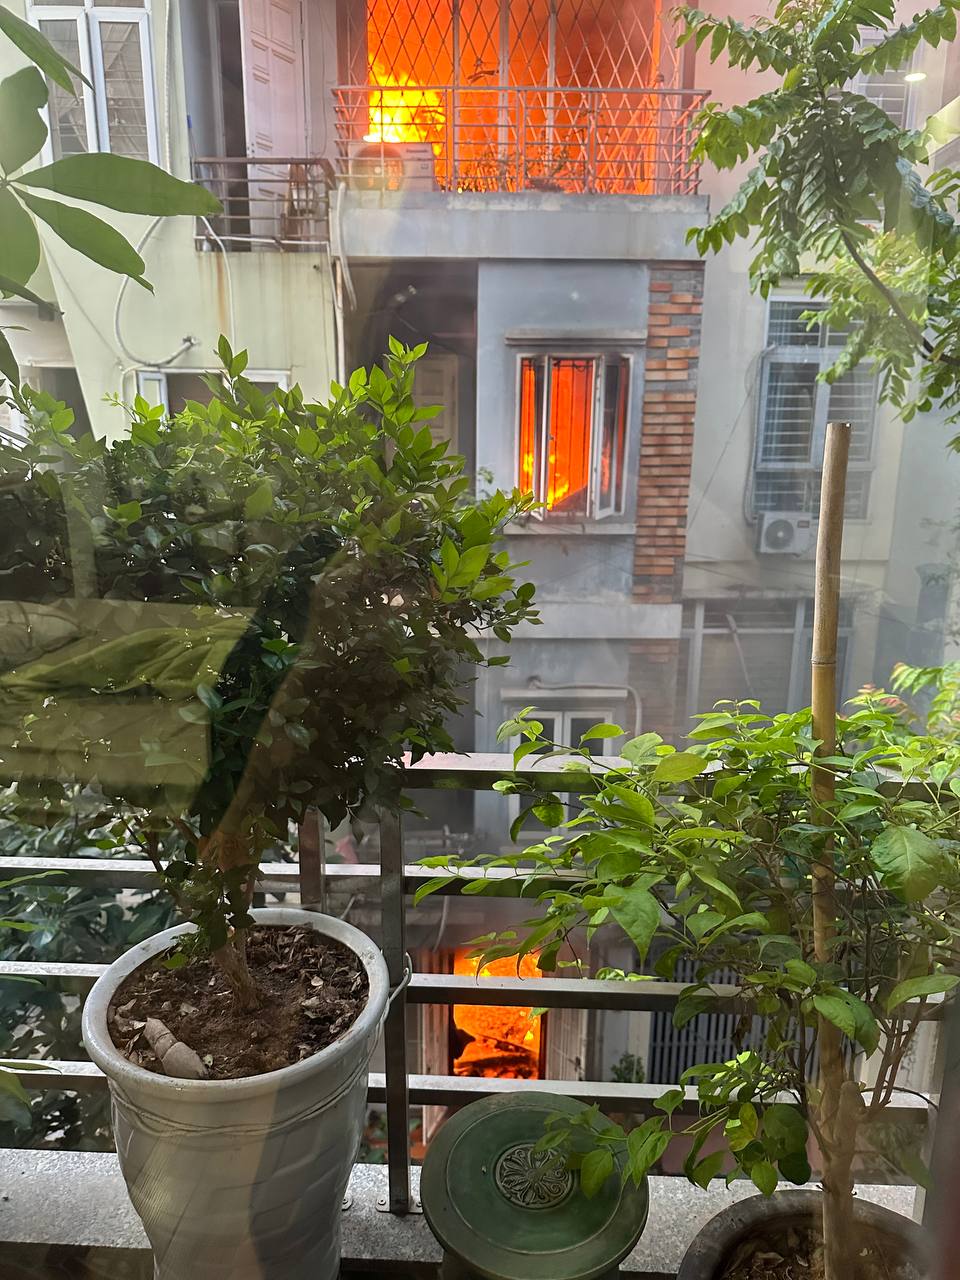 Nóng: Cháy lớn tại căn nhà 4 tầng ở Hà Nội， 2 bé trai cùng gia đình leo ban công thoát thân - Ảnh 4.